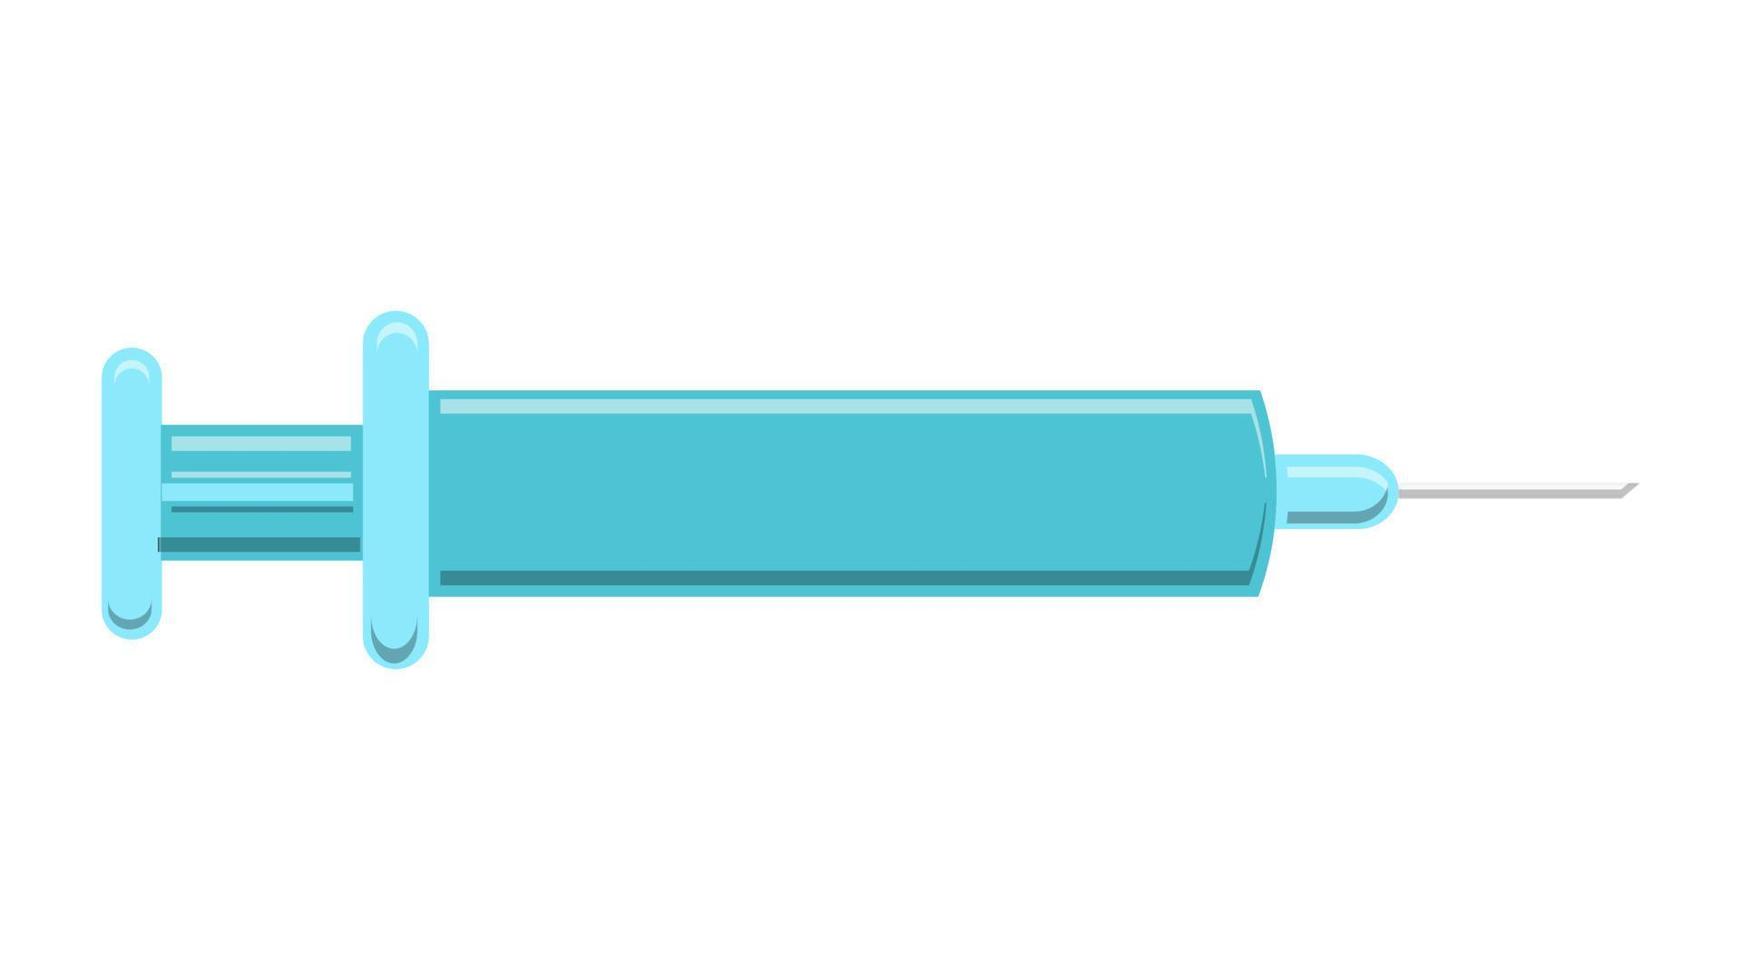 uma bela seringa de plástico descartável azul médica para injetar vacinas inoculando drogas com uma agulha farmacêutica em um fundo branco. ilustração vetorial vetor